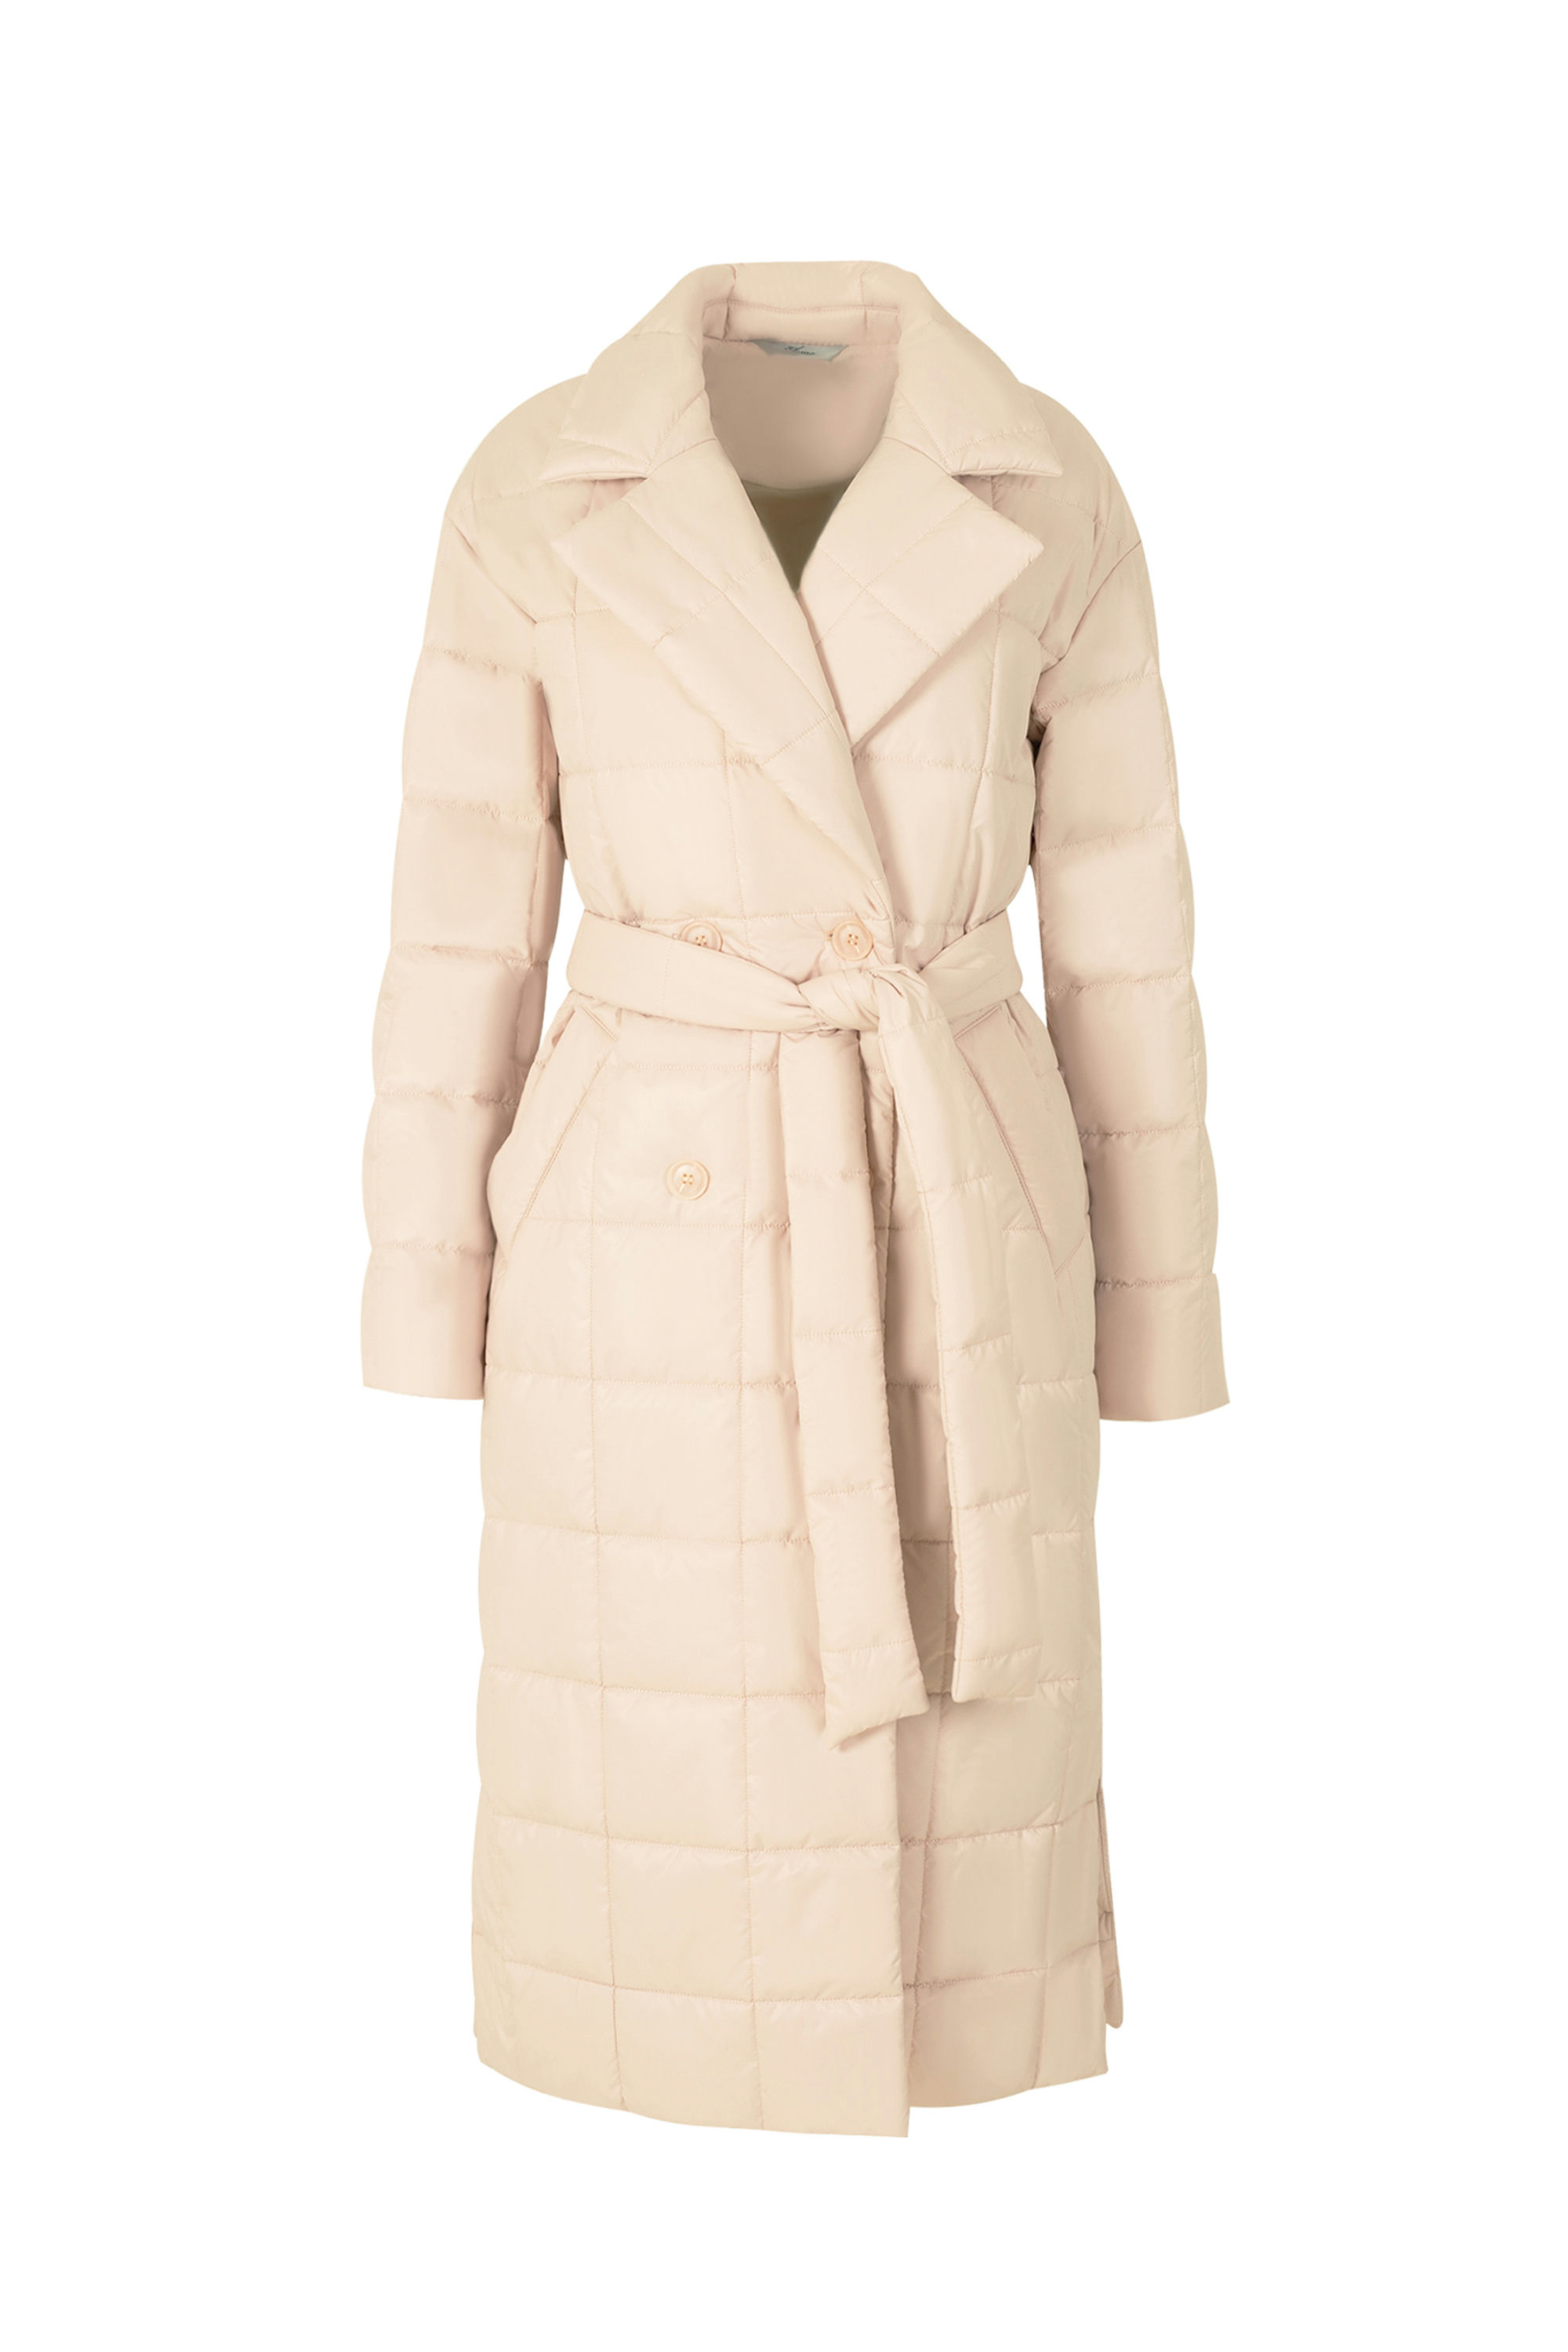 Пальто женское плащевое утепленное 5-12405-1